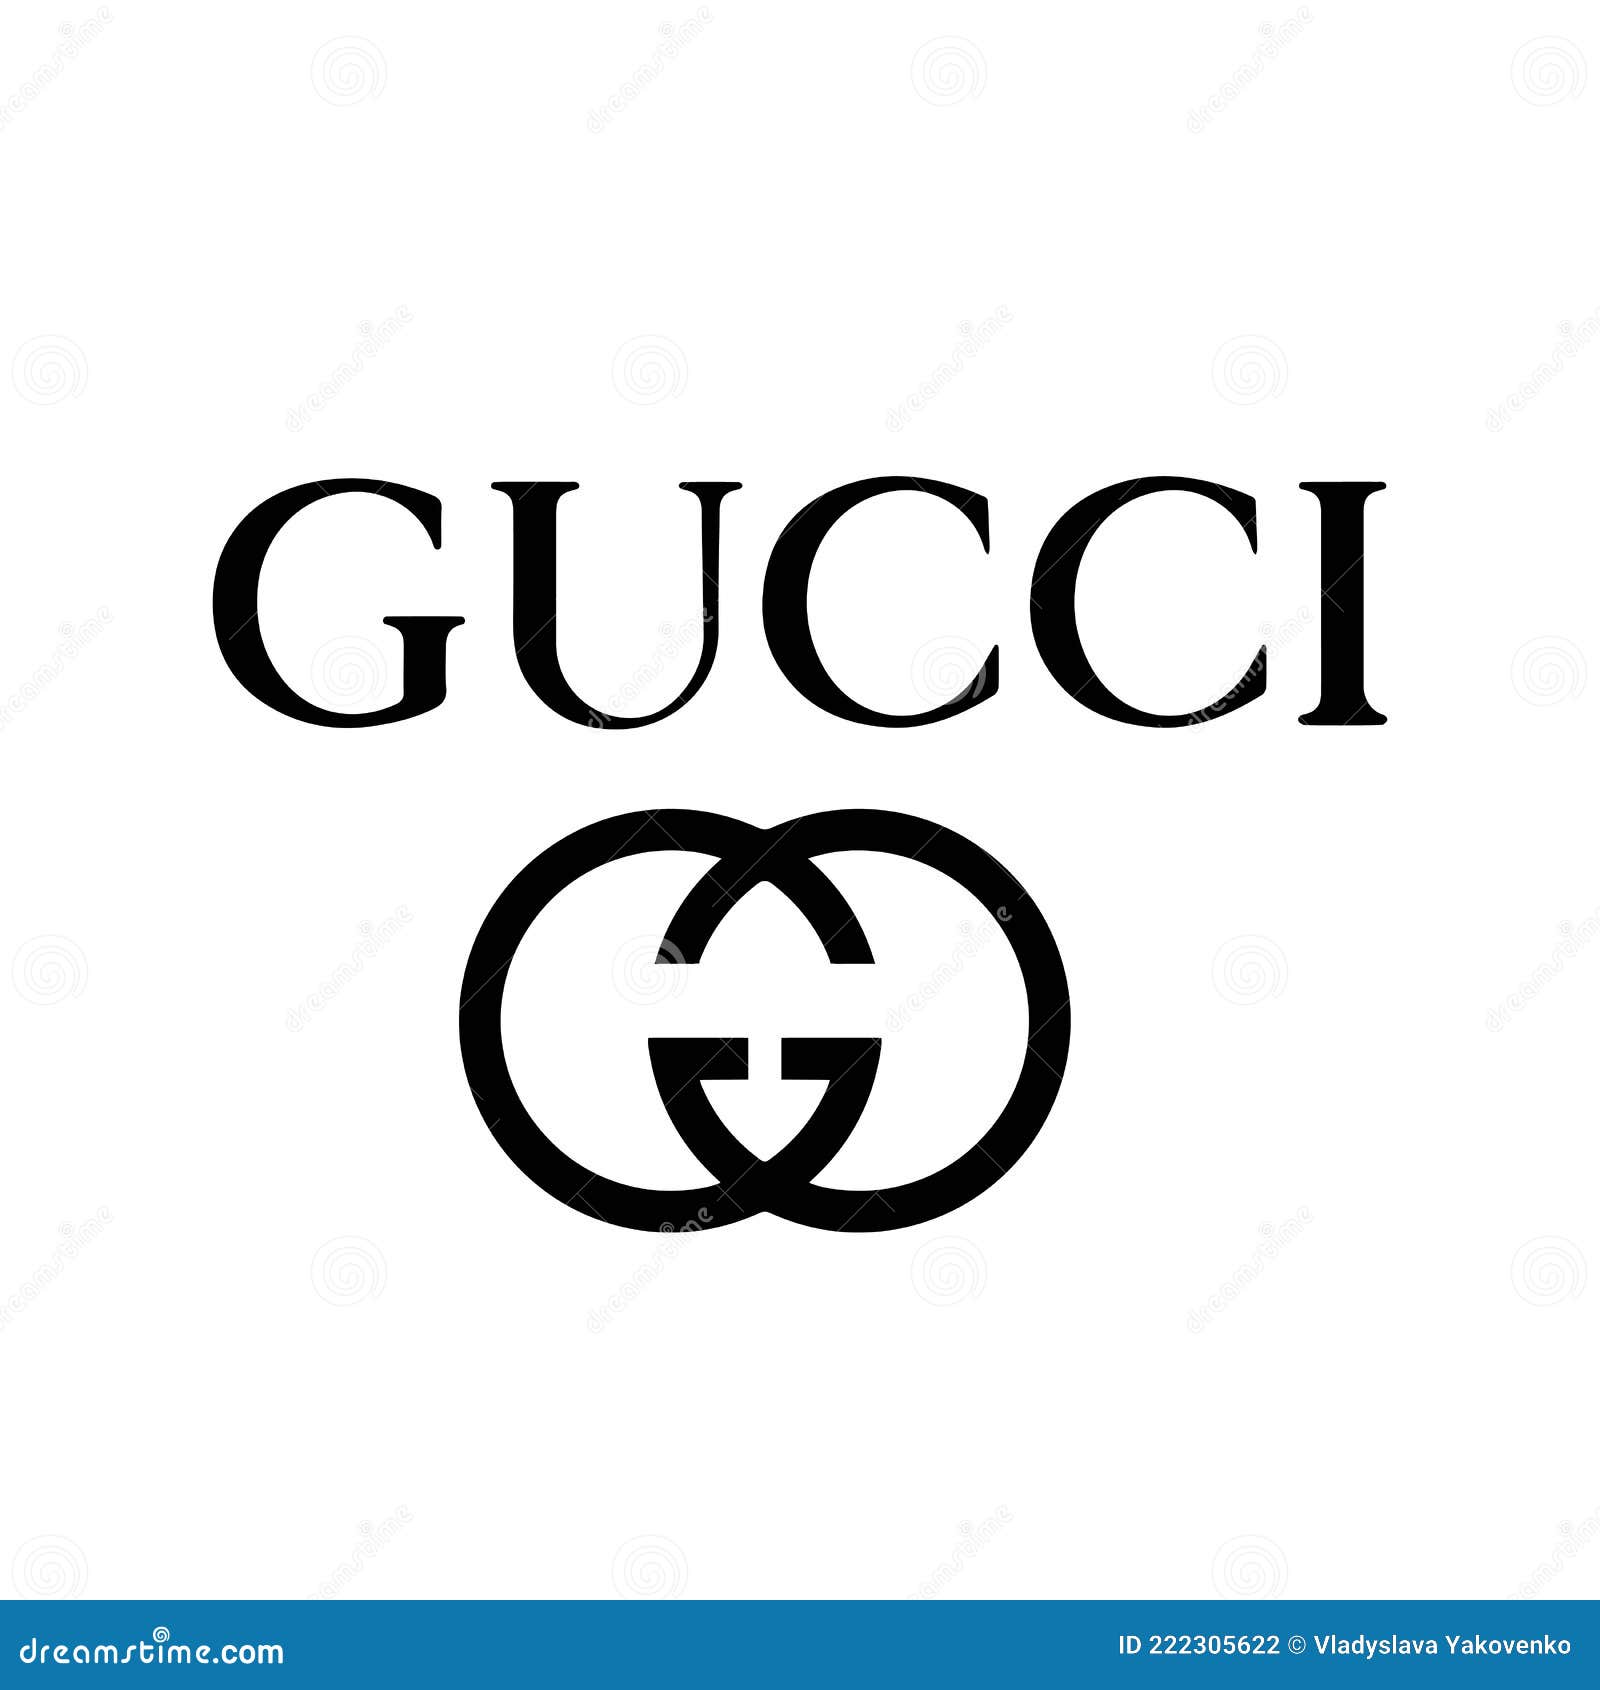 Gucci Logo Stock Illustrations 117 Gucci Logo Stock Illustrations, Vectors & Clipart -